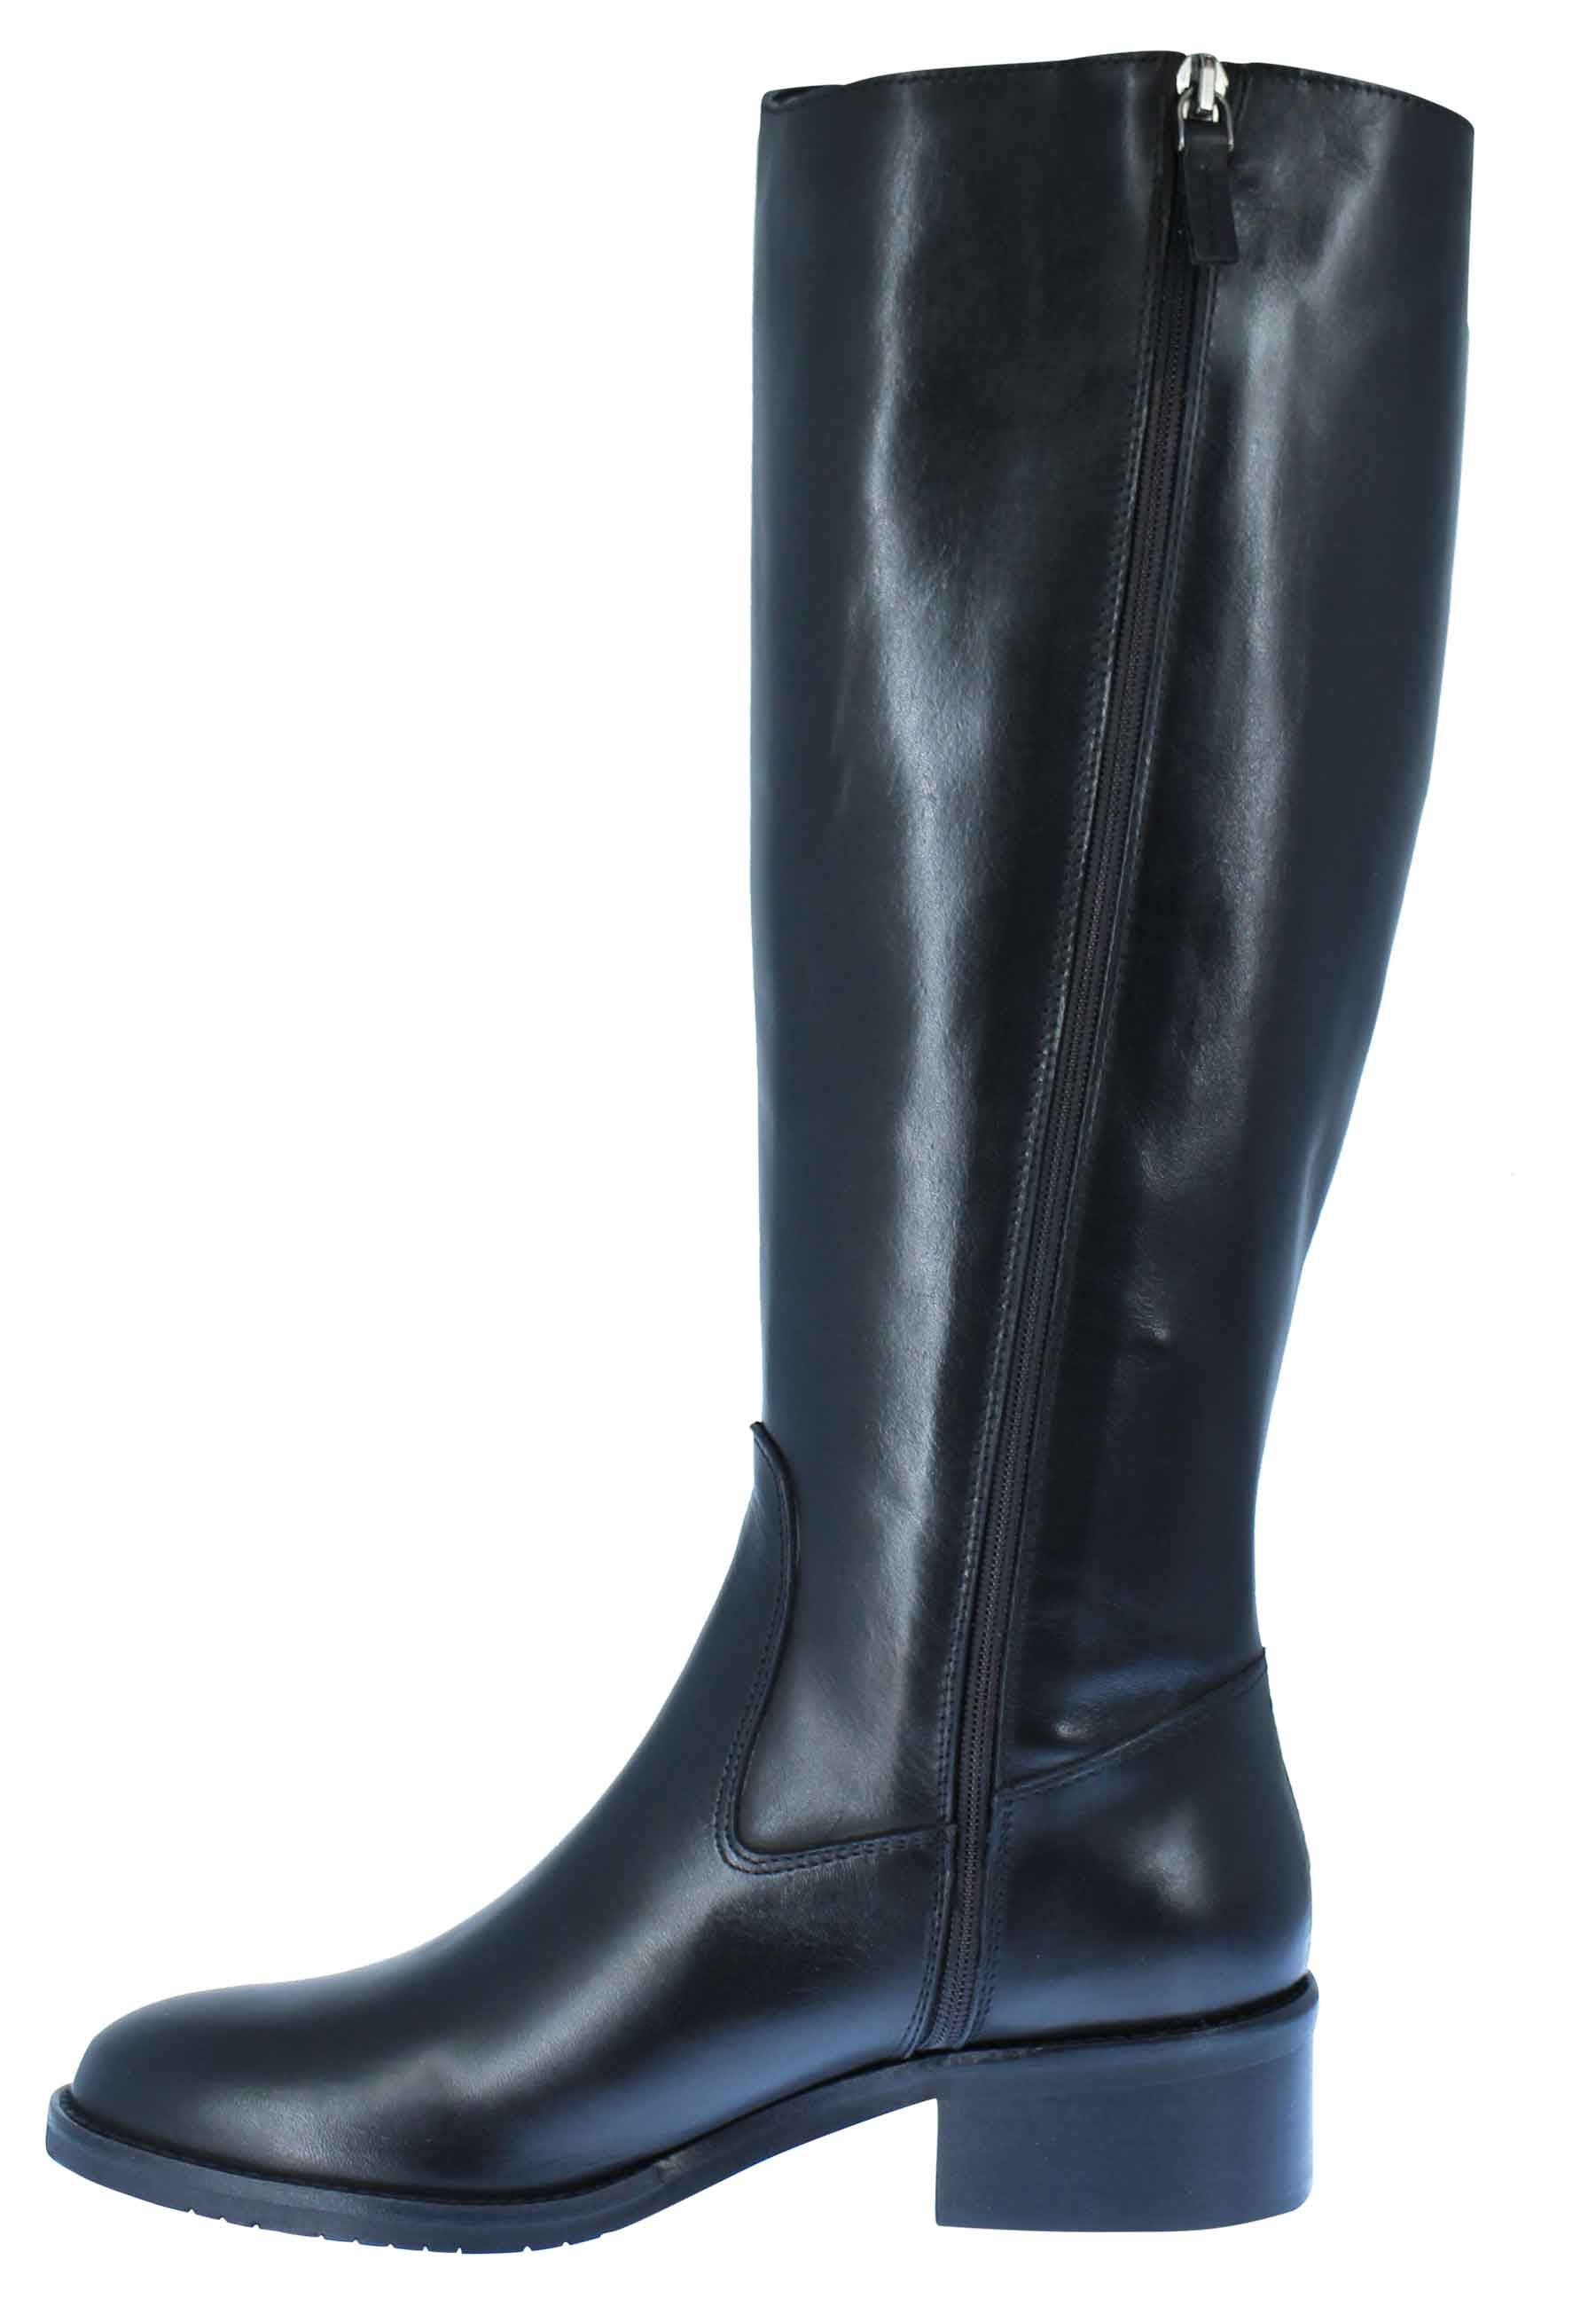 Stivali donna in pelle nera tacco basso con borchie e zip laterale